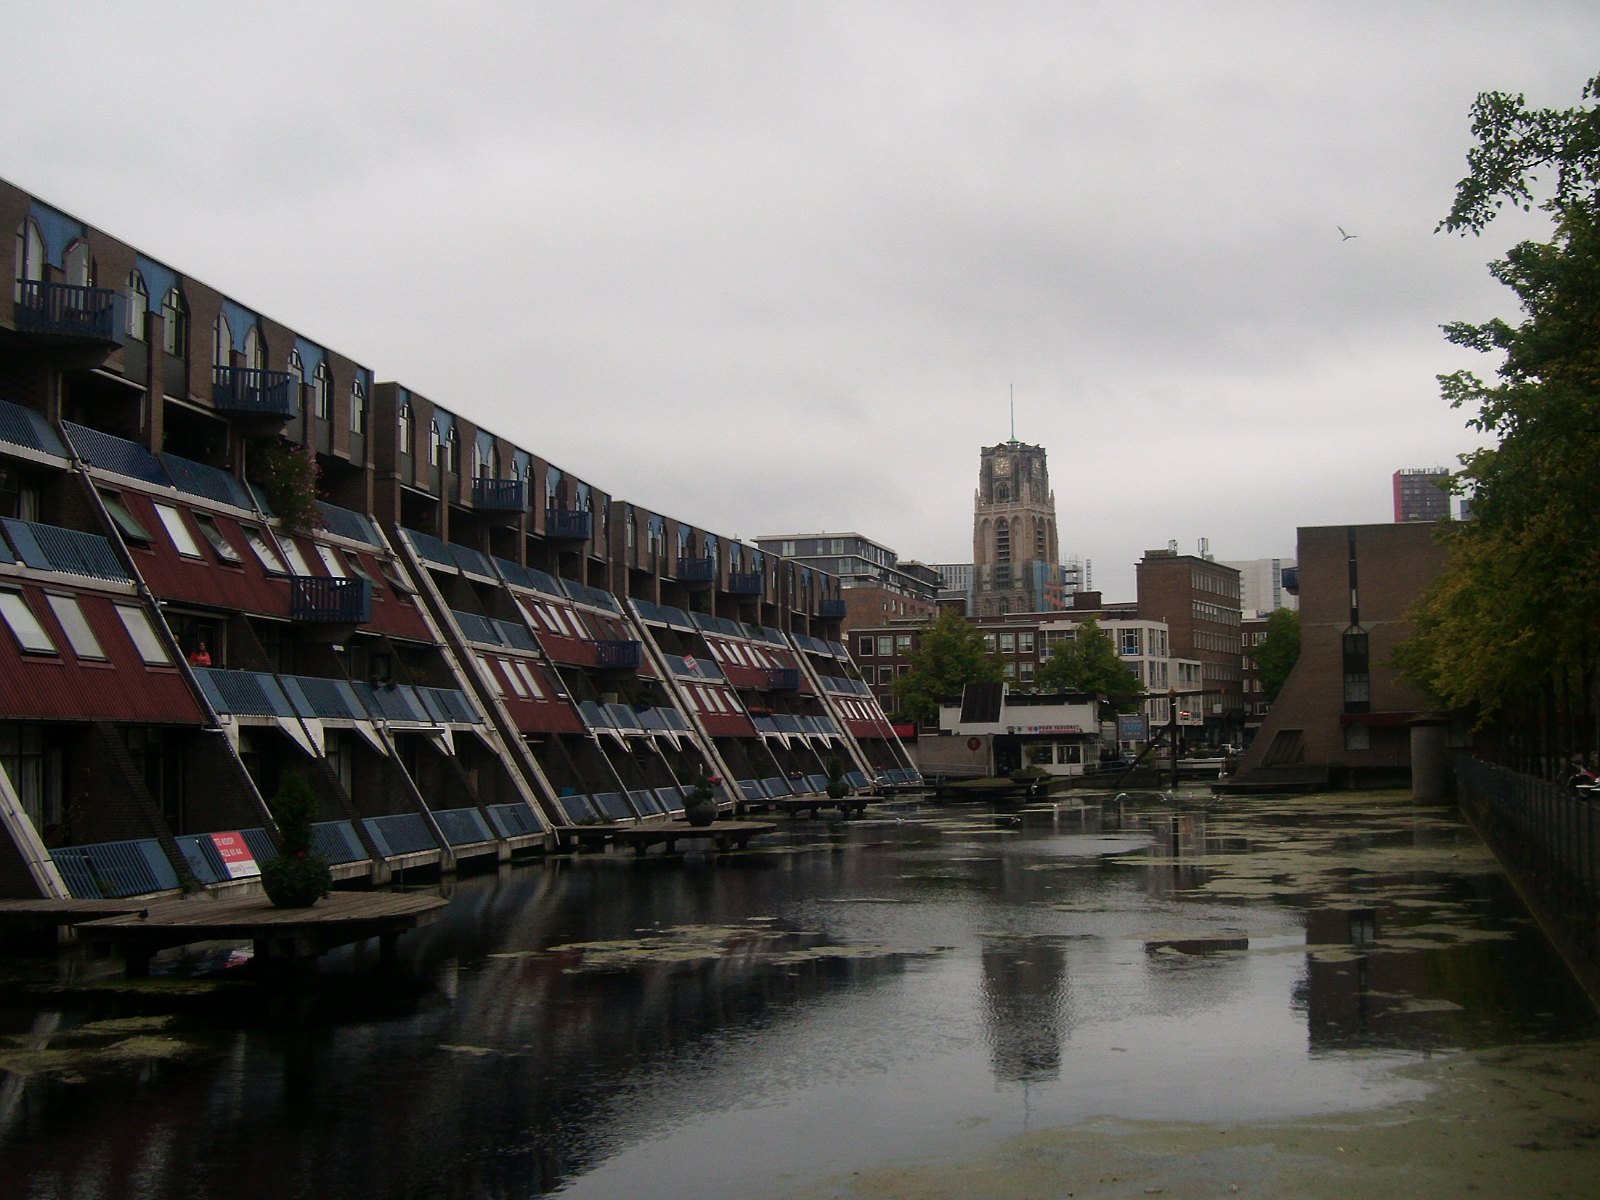 45.2. Szeregowce o ciekawym kształcie przy jednym z wielu kanałów Rotterdamu